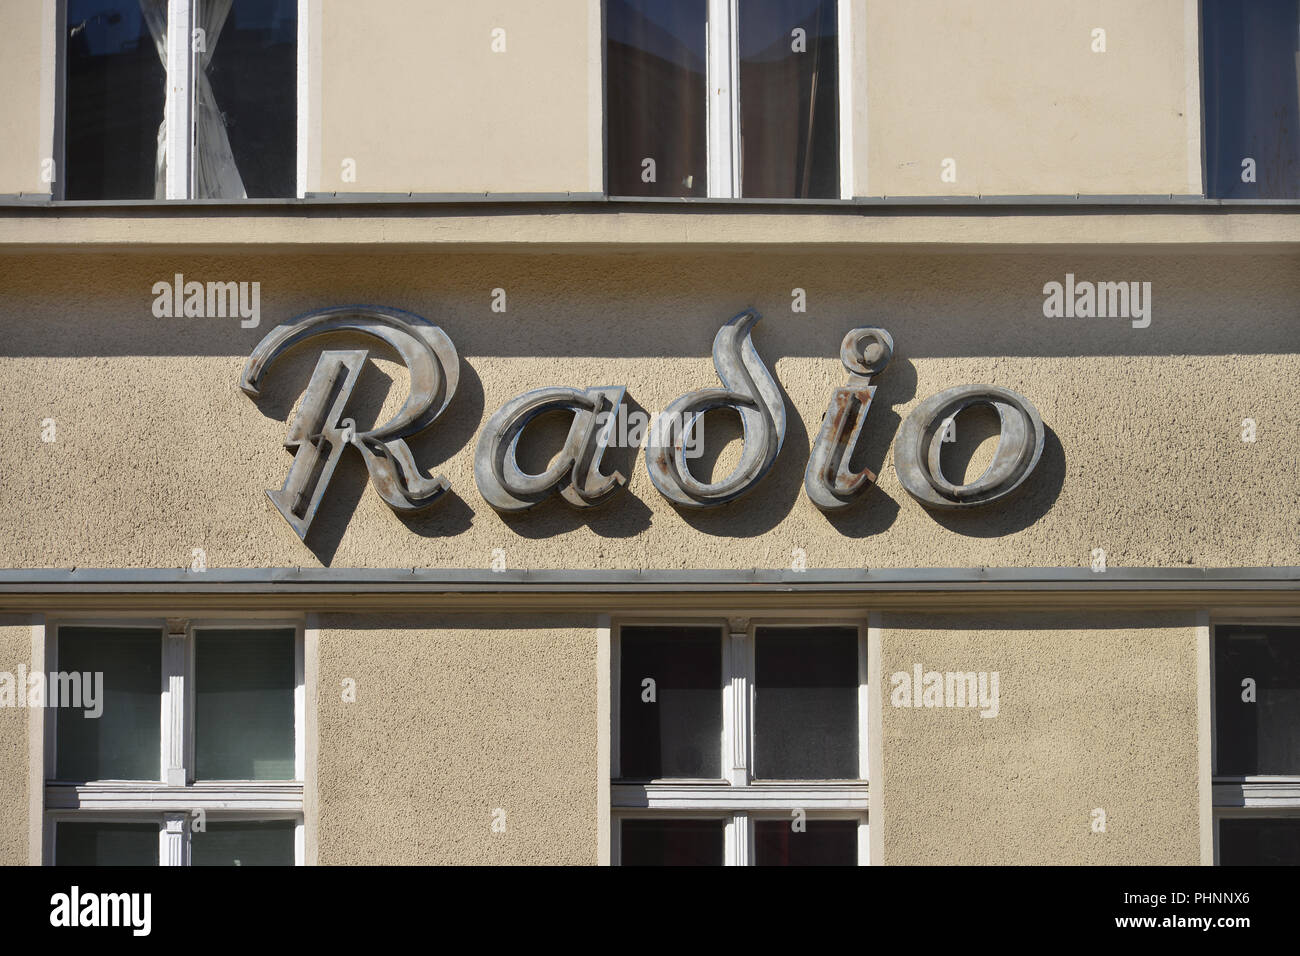 Alte Radio Werbung, Potsdamer Strasse, Schoeneberg, Berlin, Deutschland  Stock Photo - Alamy